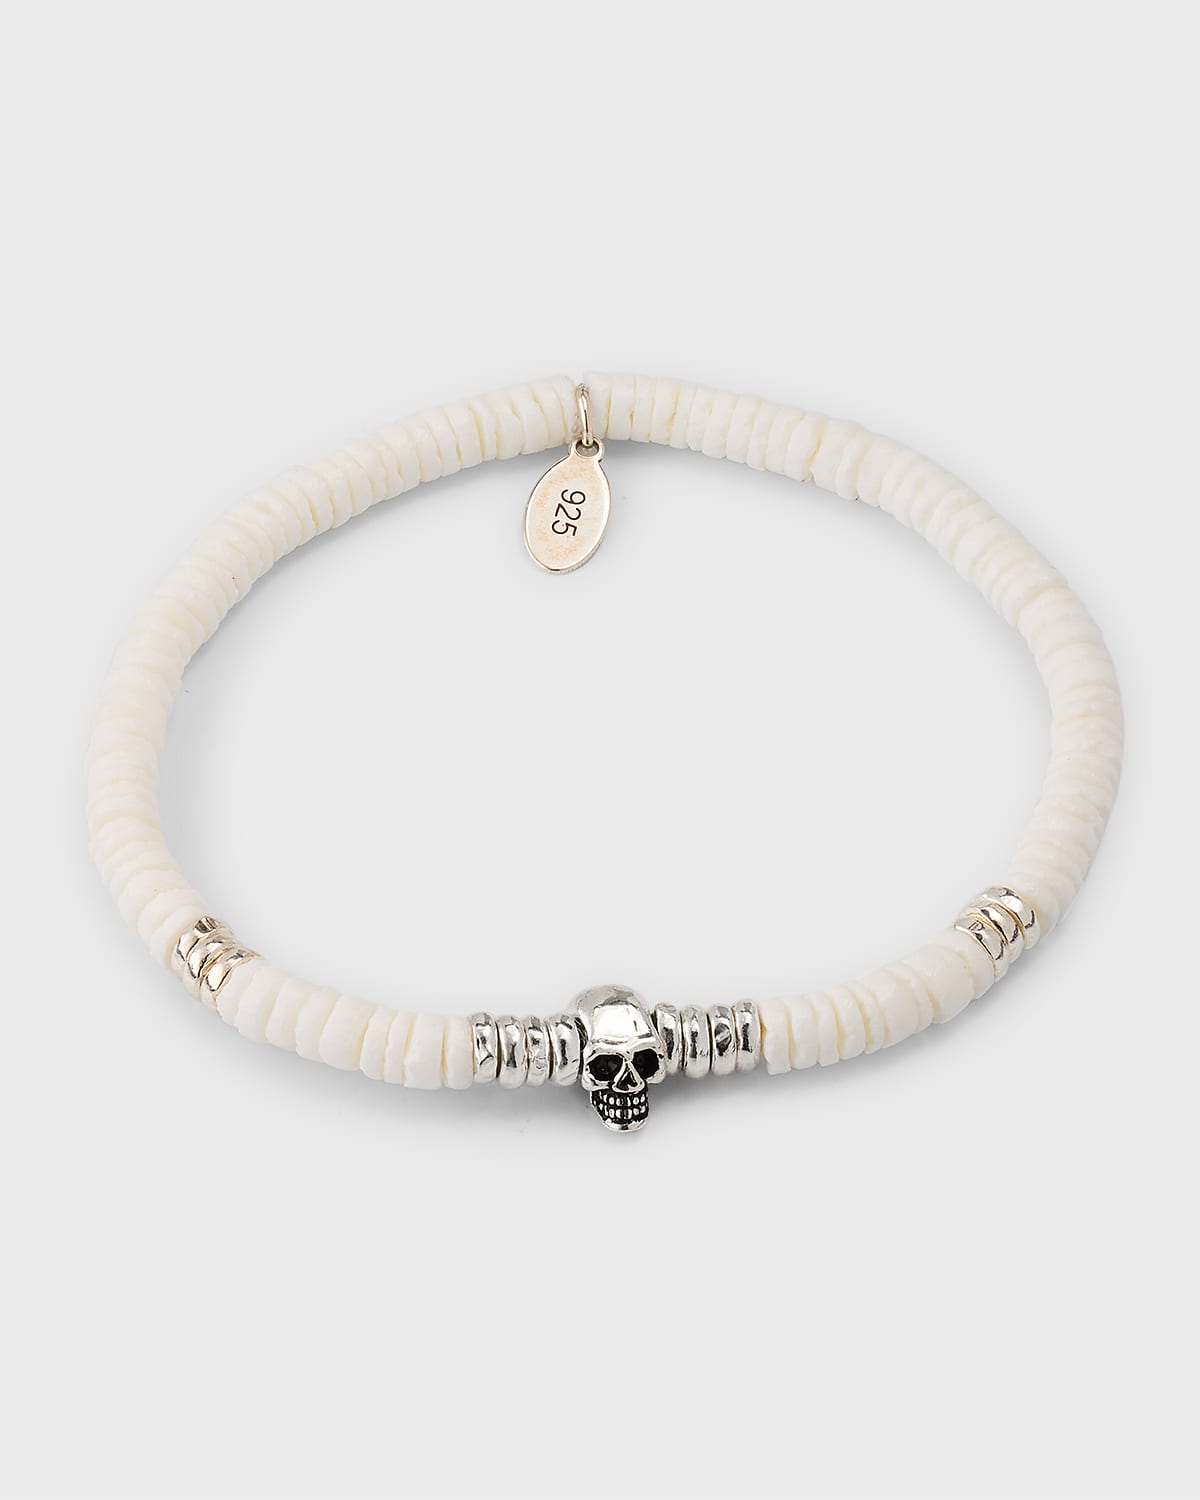 Jan Leslie Men's Shell Beaded Bracelet with Sterling Silver Skull